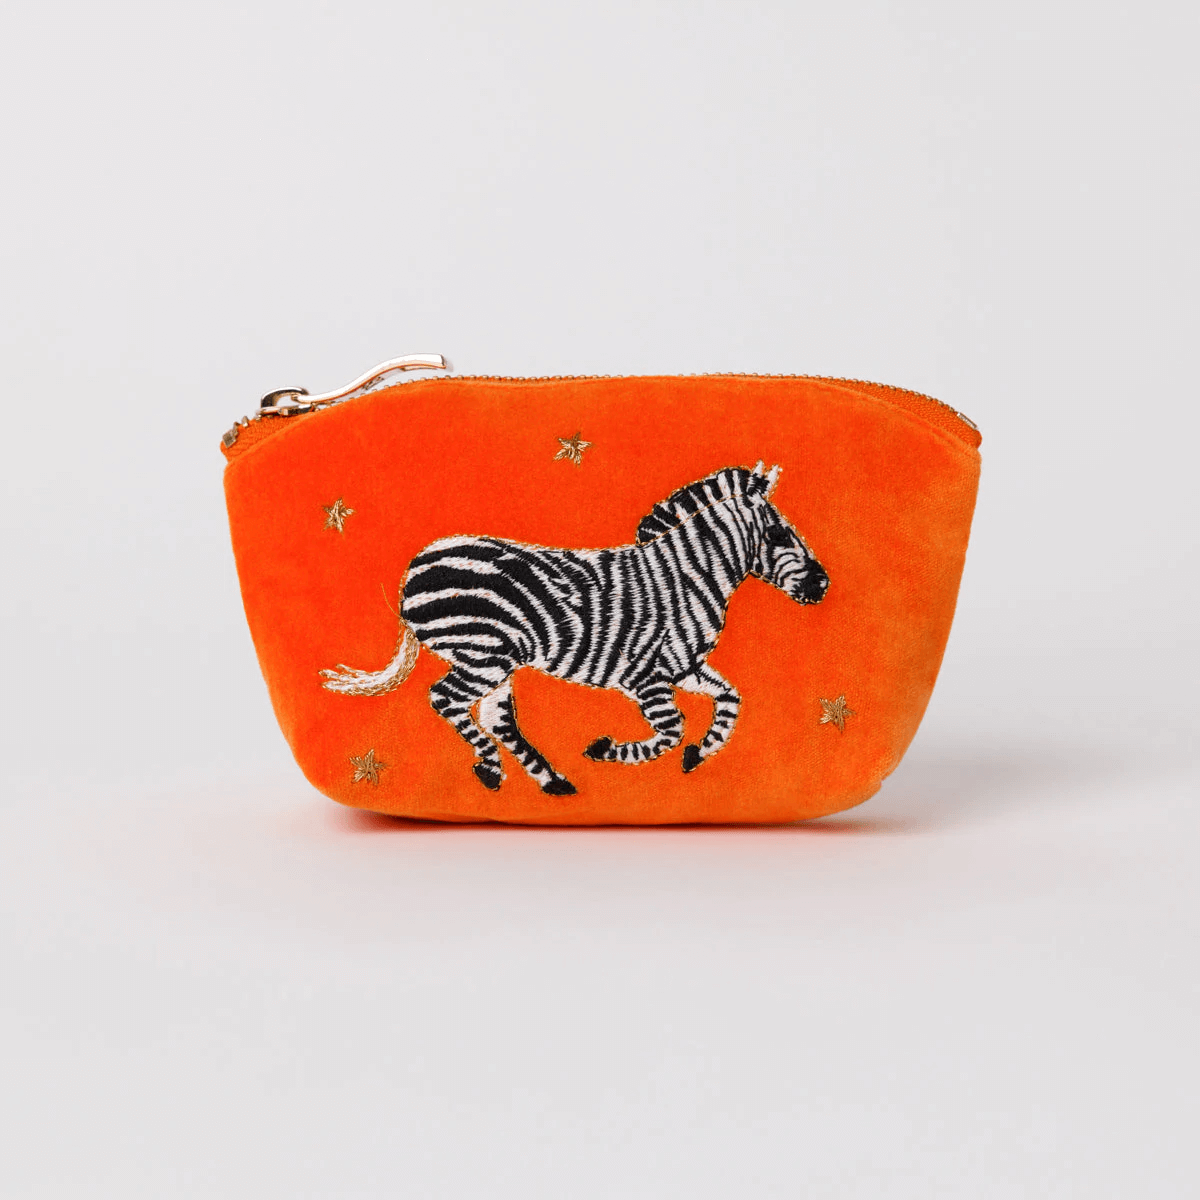 zebra-orange-velvet-coin-purse-001_b5a17027-9d92-494e-b7a1-f2a520dee7cb